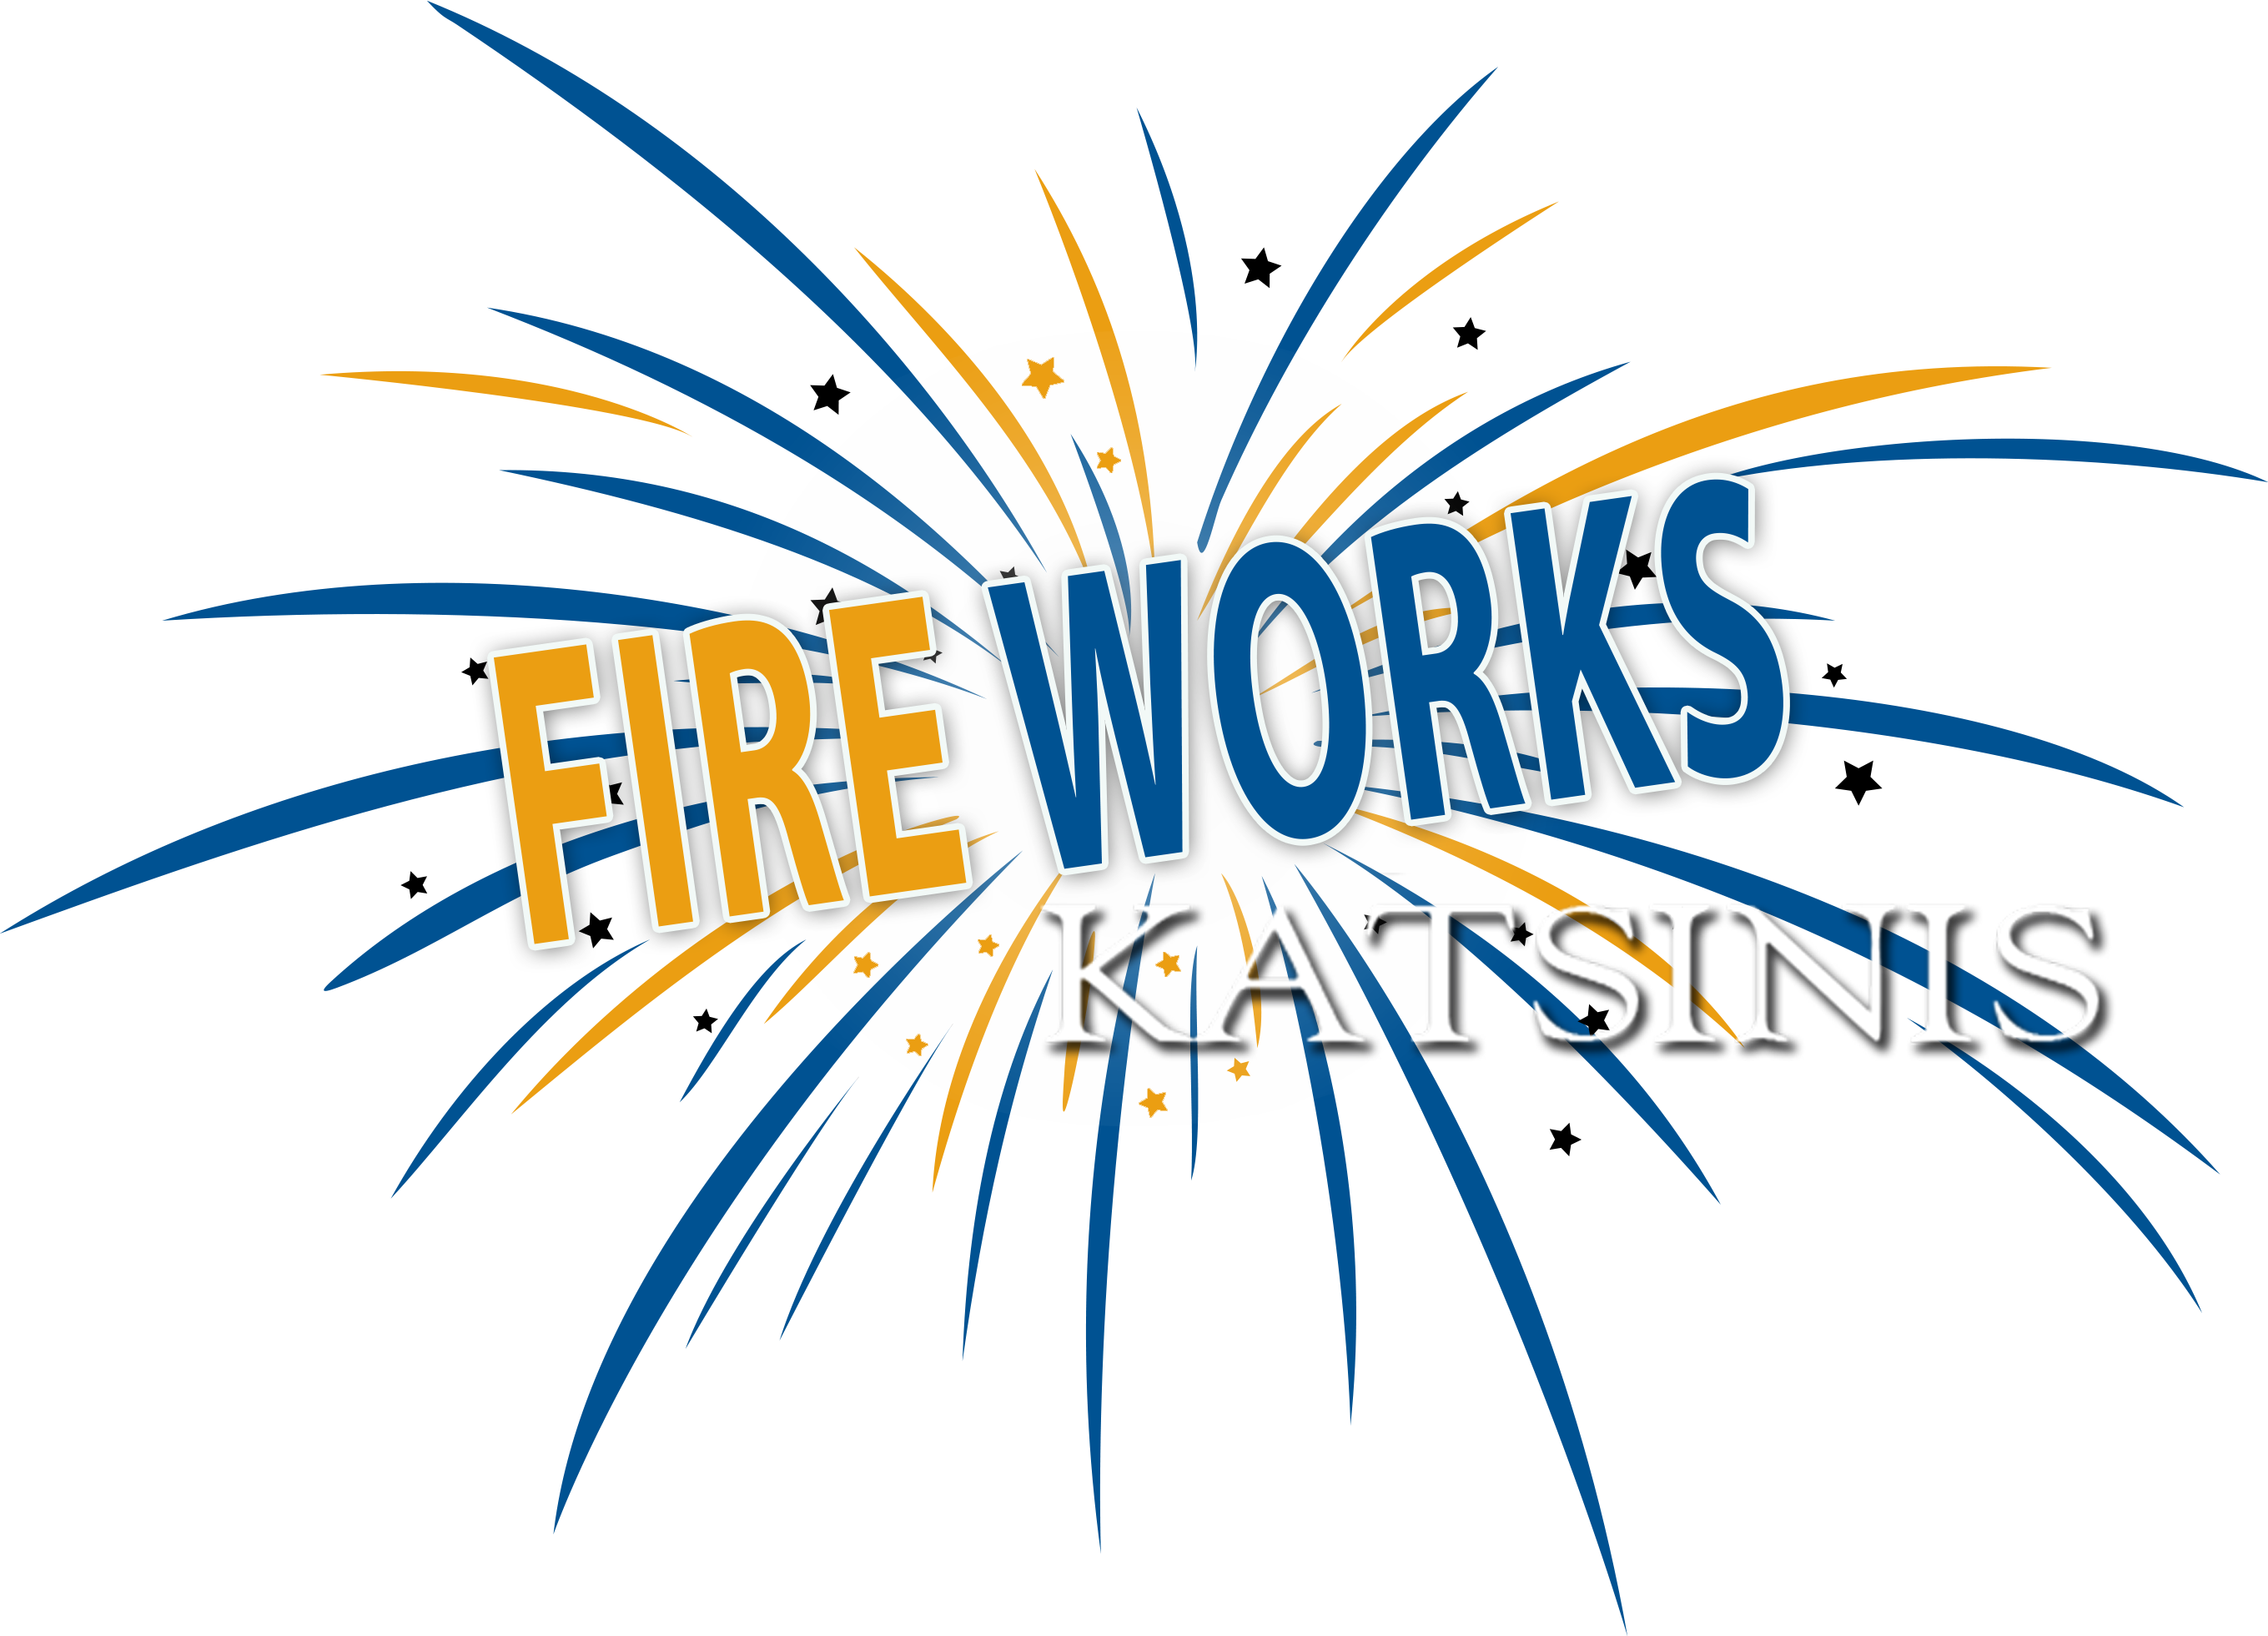 E-Fireworks Katsinis